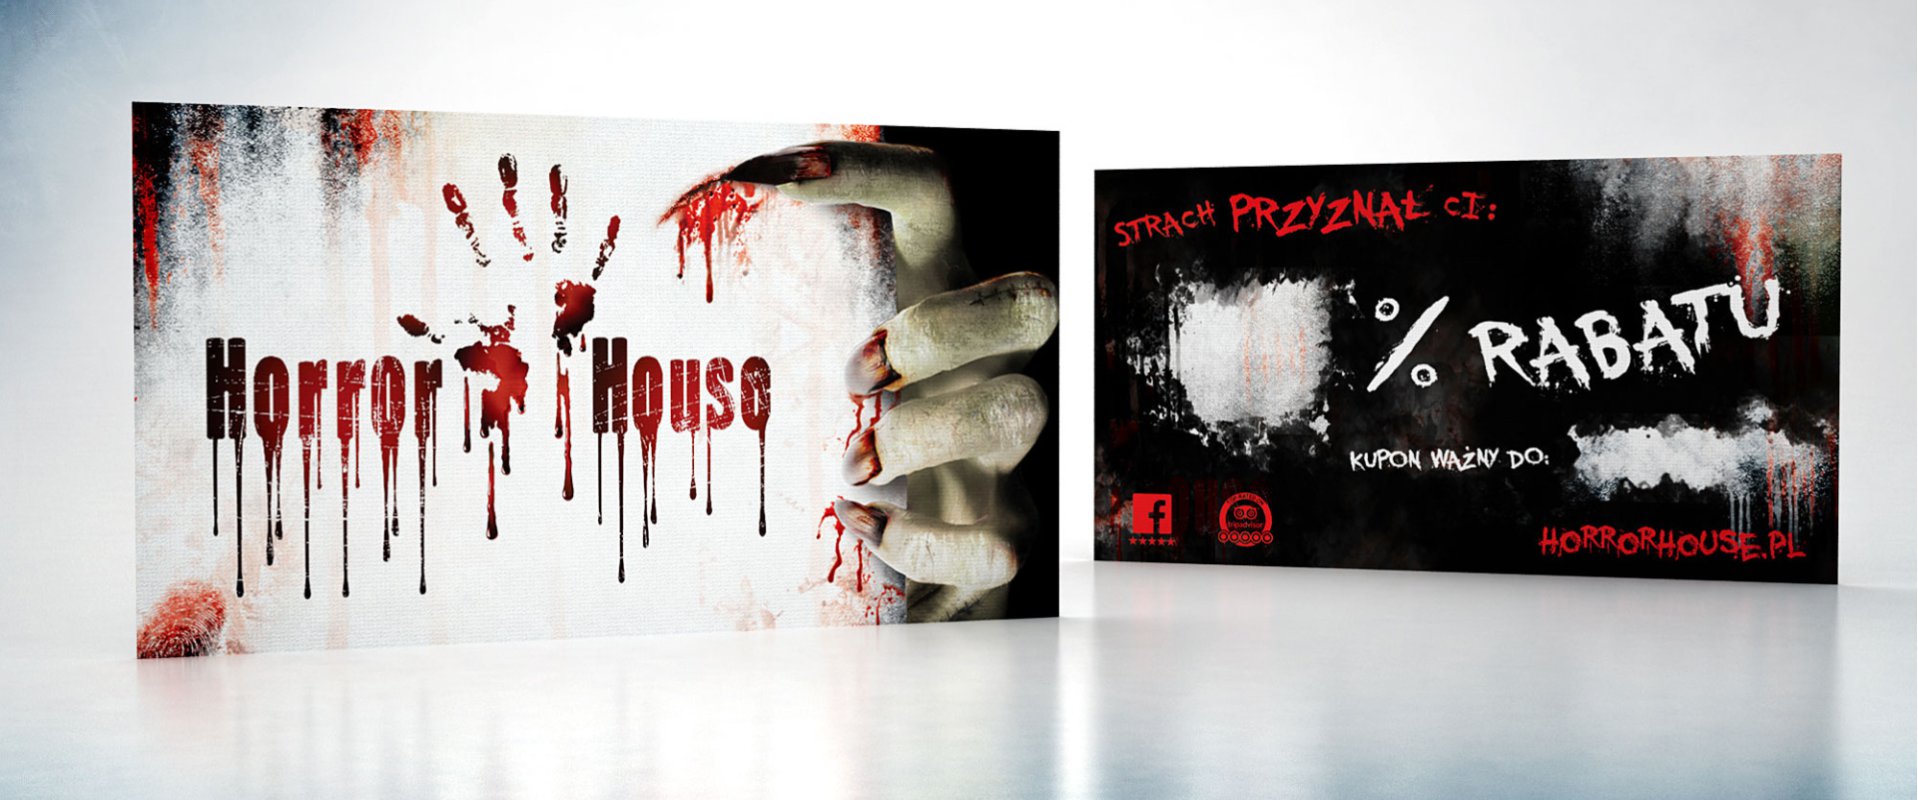 horror house haunted brandingdesign advertisement warszawa 